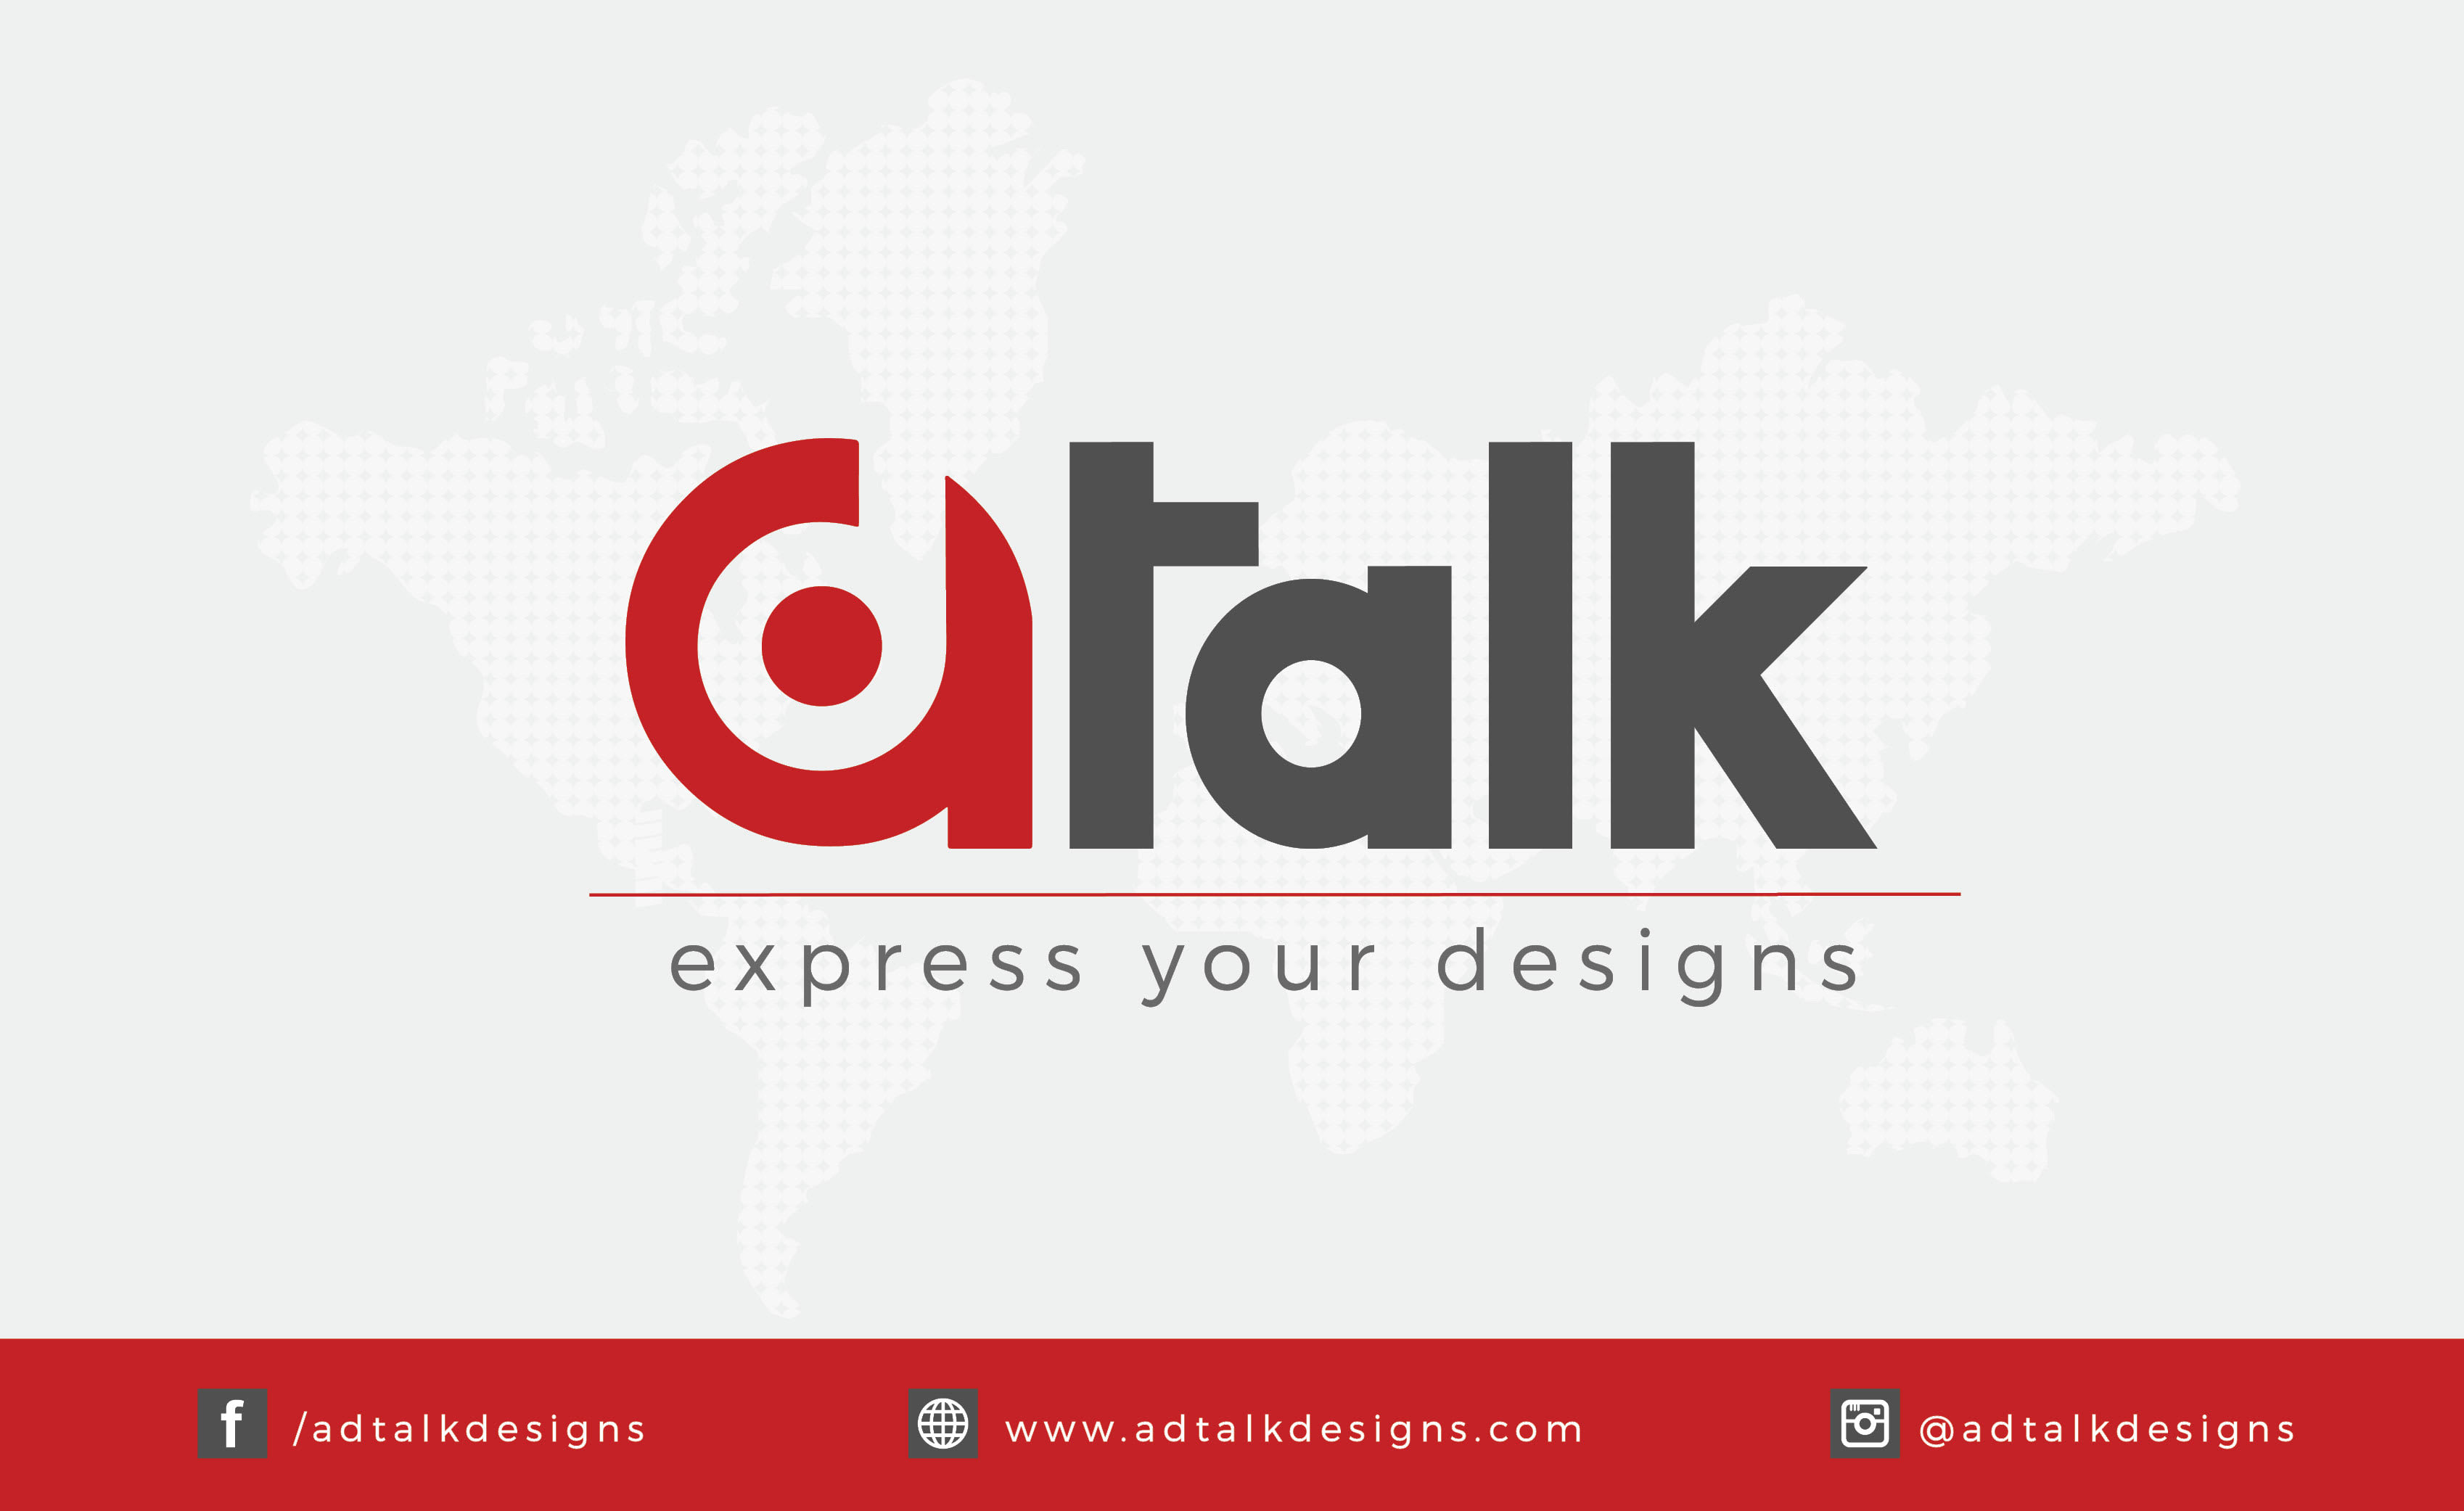 Adtalk Designs